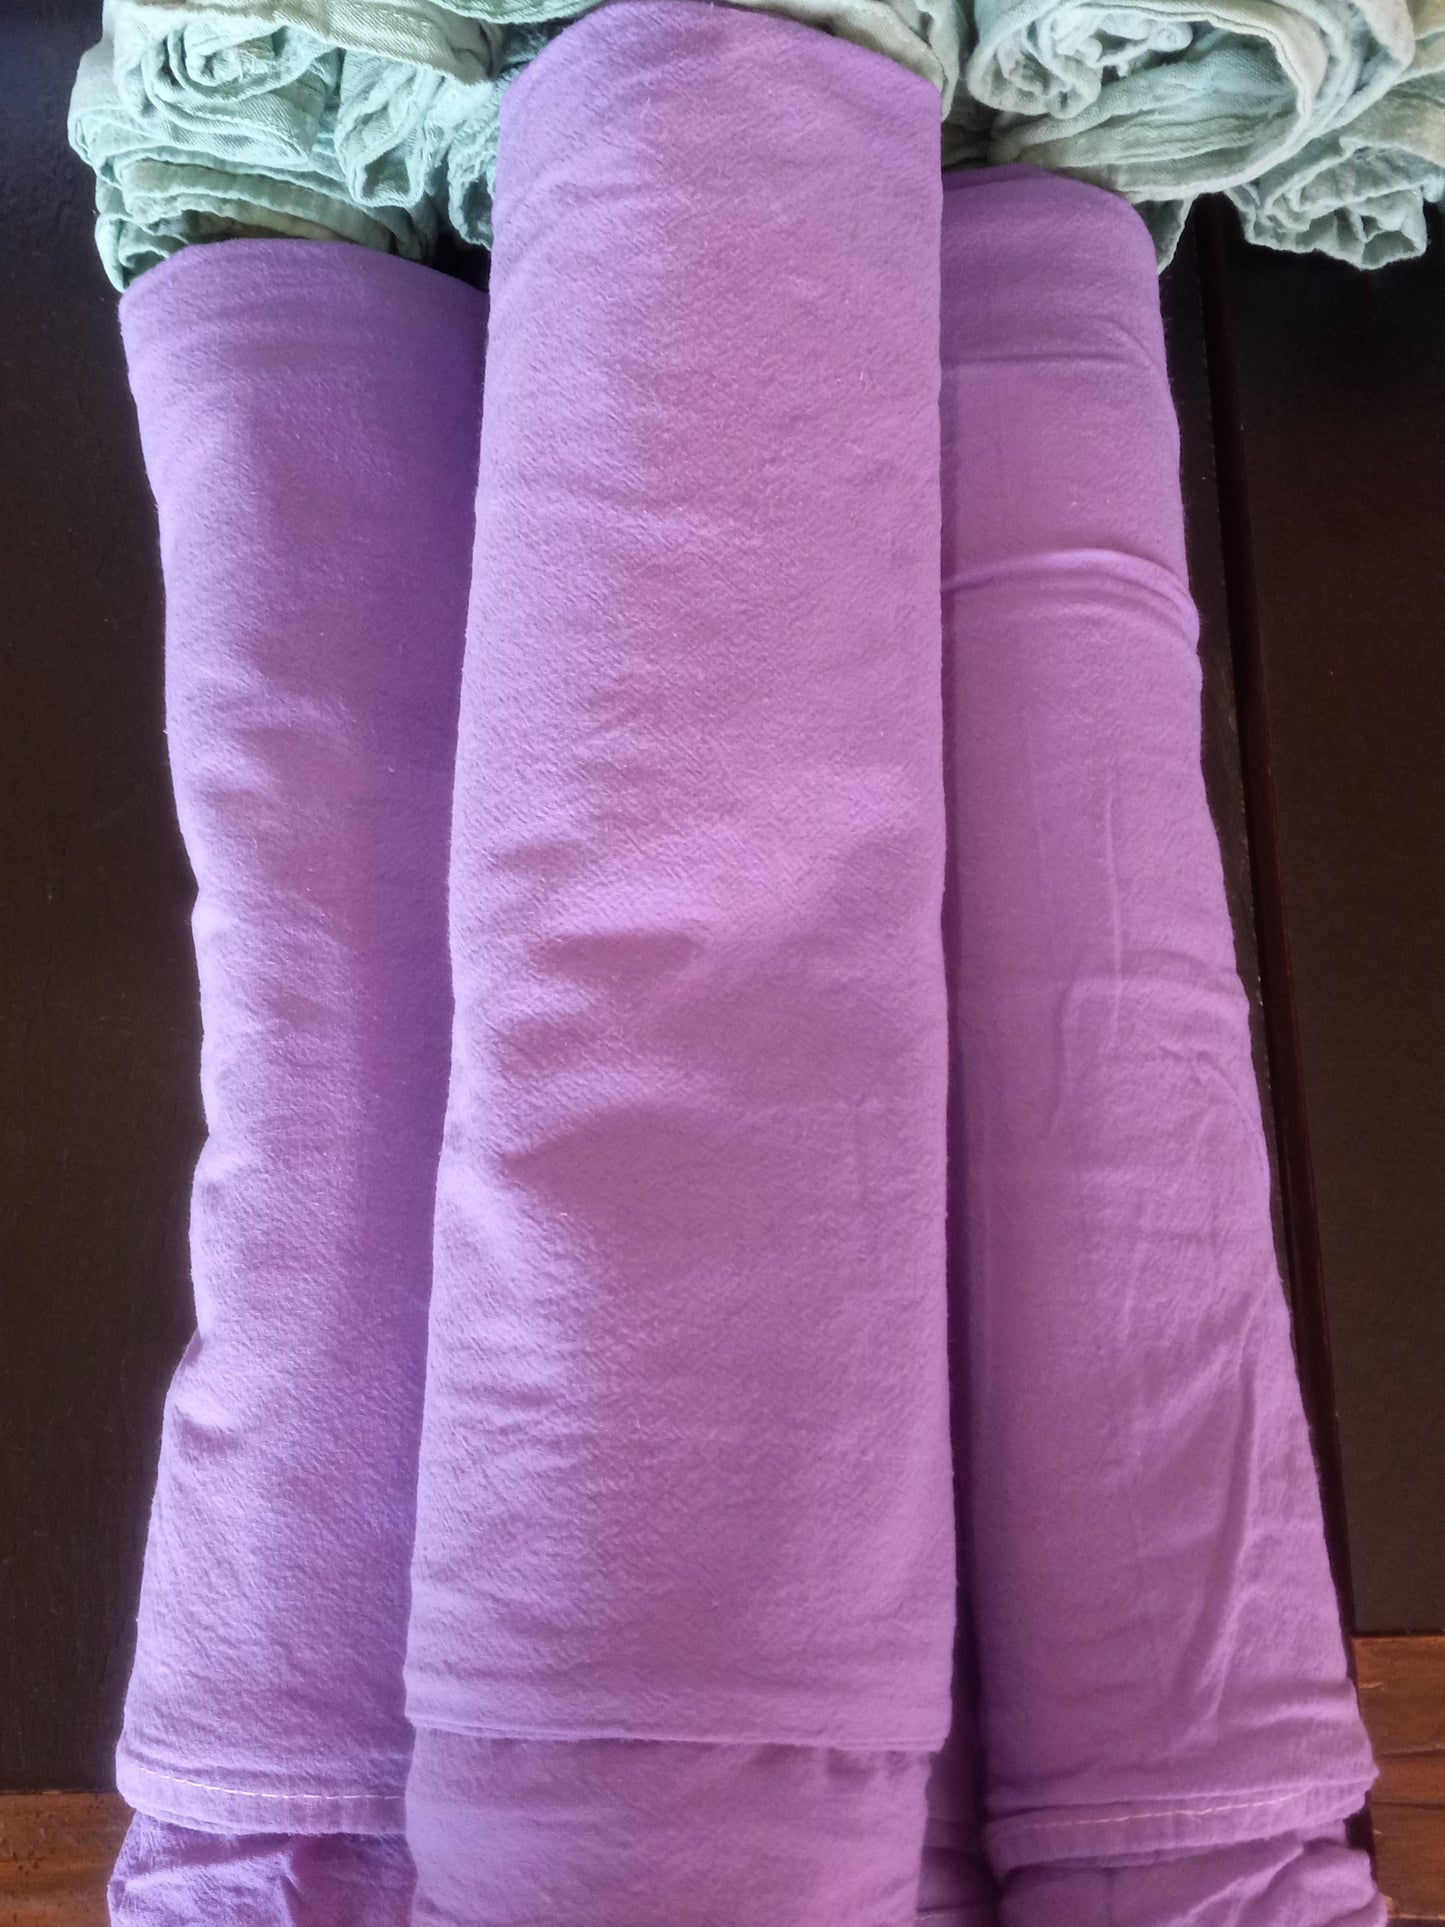 Purple Flour Sack Towels